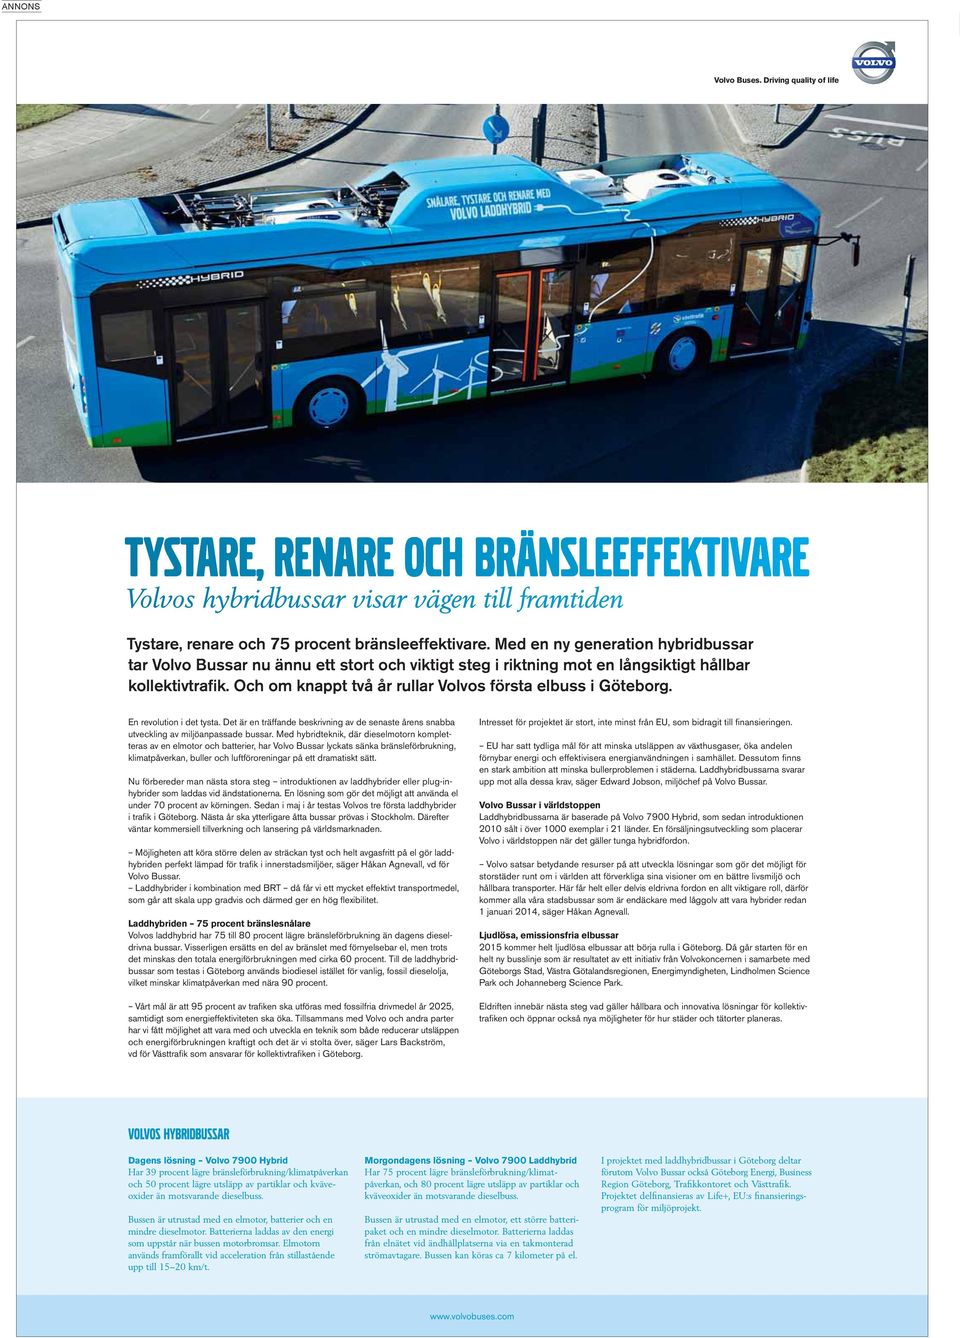 Och om knappt två år rullar Volvos första elbuss i Göteborg. En revolution i det tysta. Det är en träffande beskrivning av de senaste årens snabba utveckling av miljöanpassade bussar.